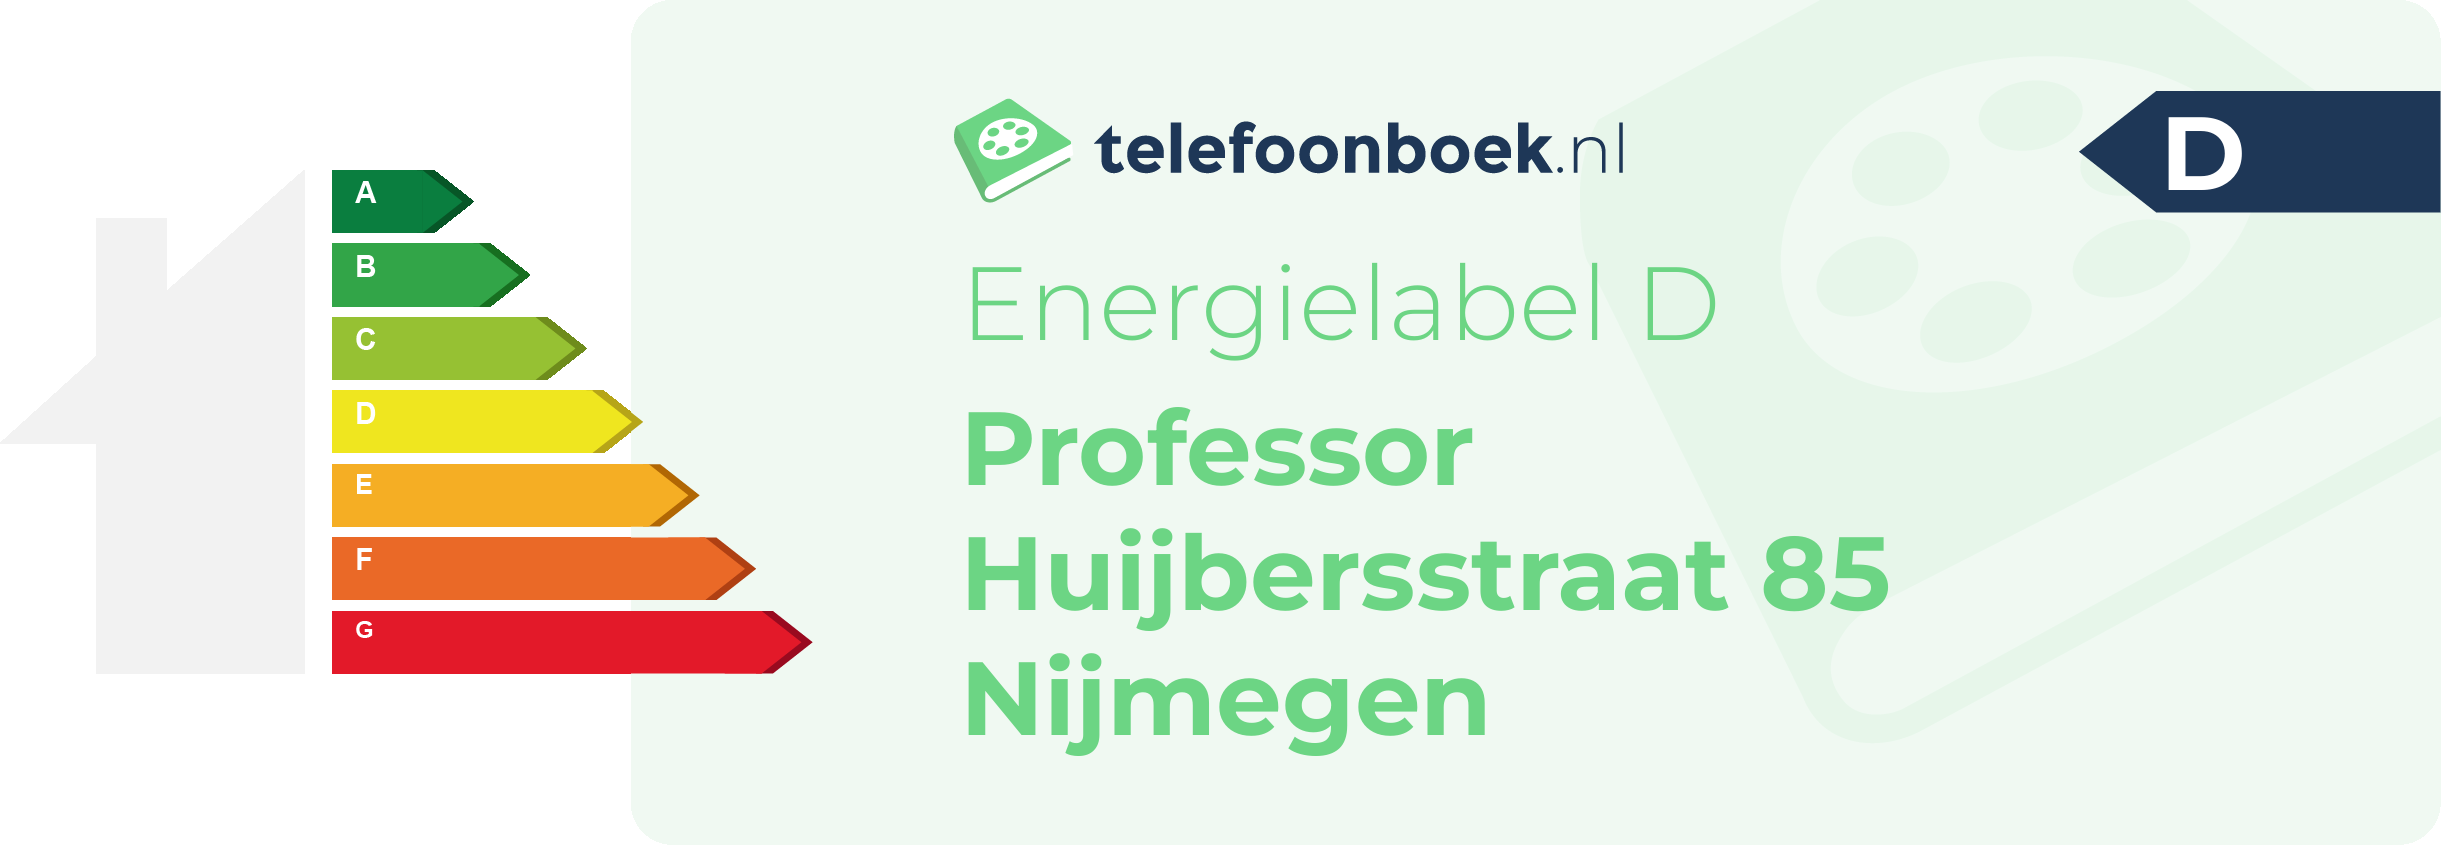 Energielabel Professor Huijbersstraat 85 Nijmegen